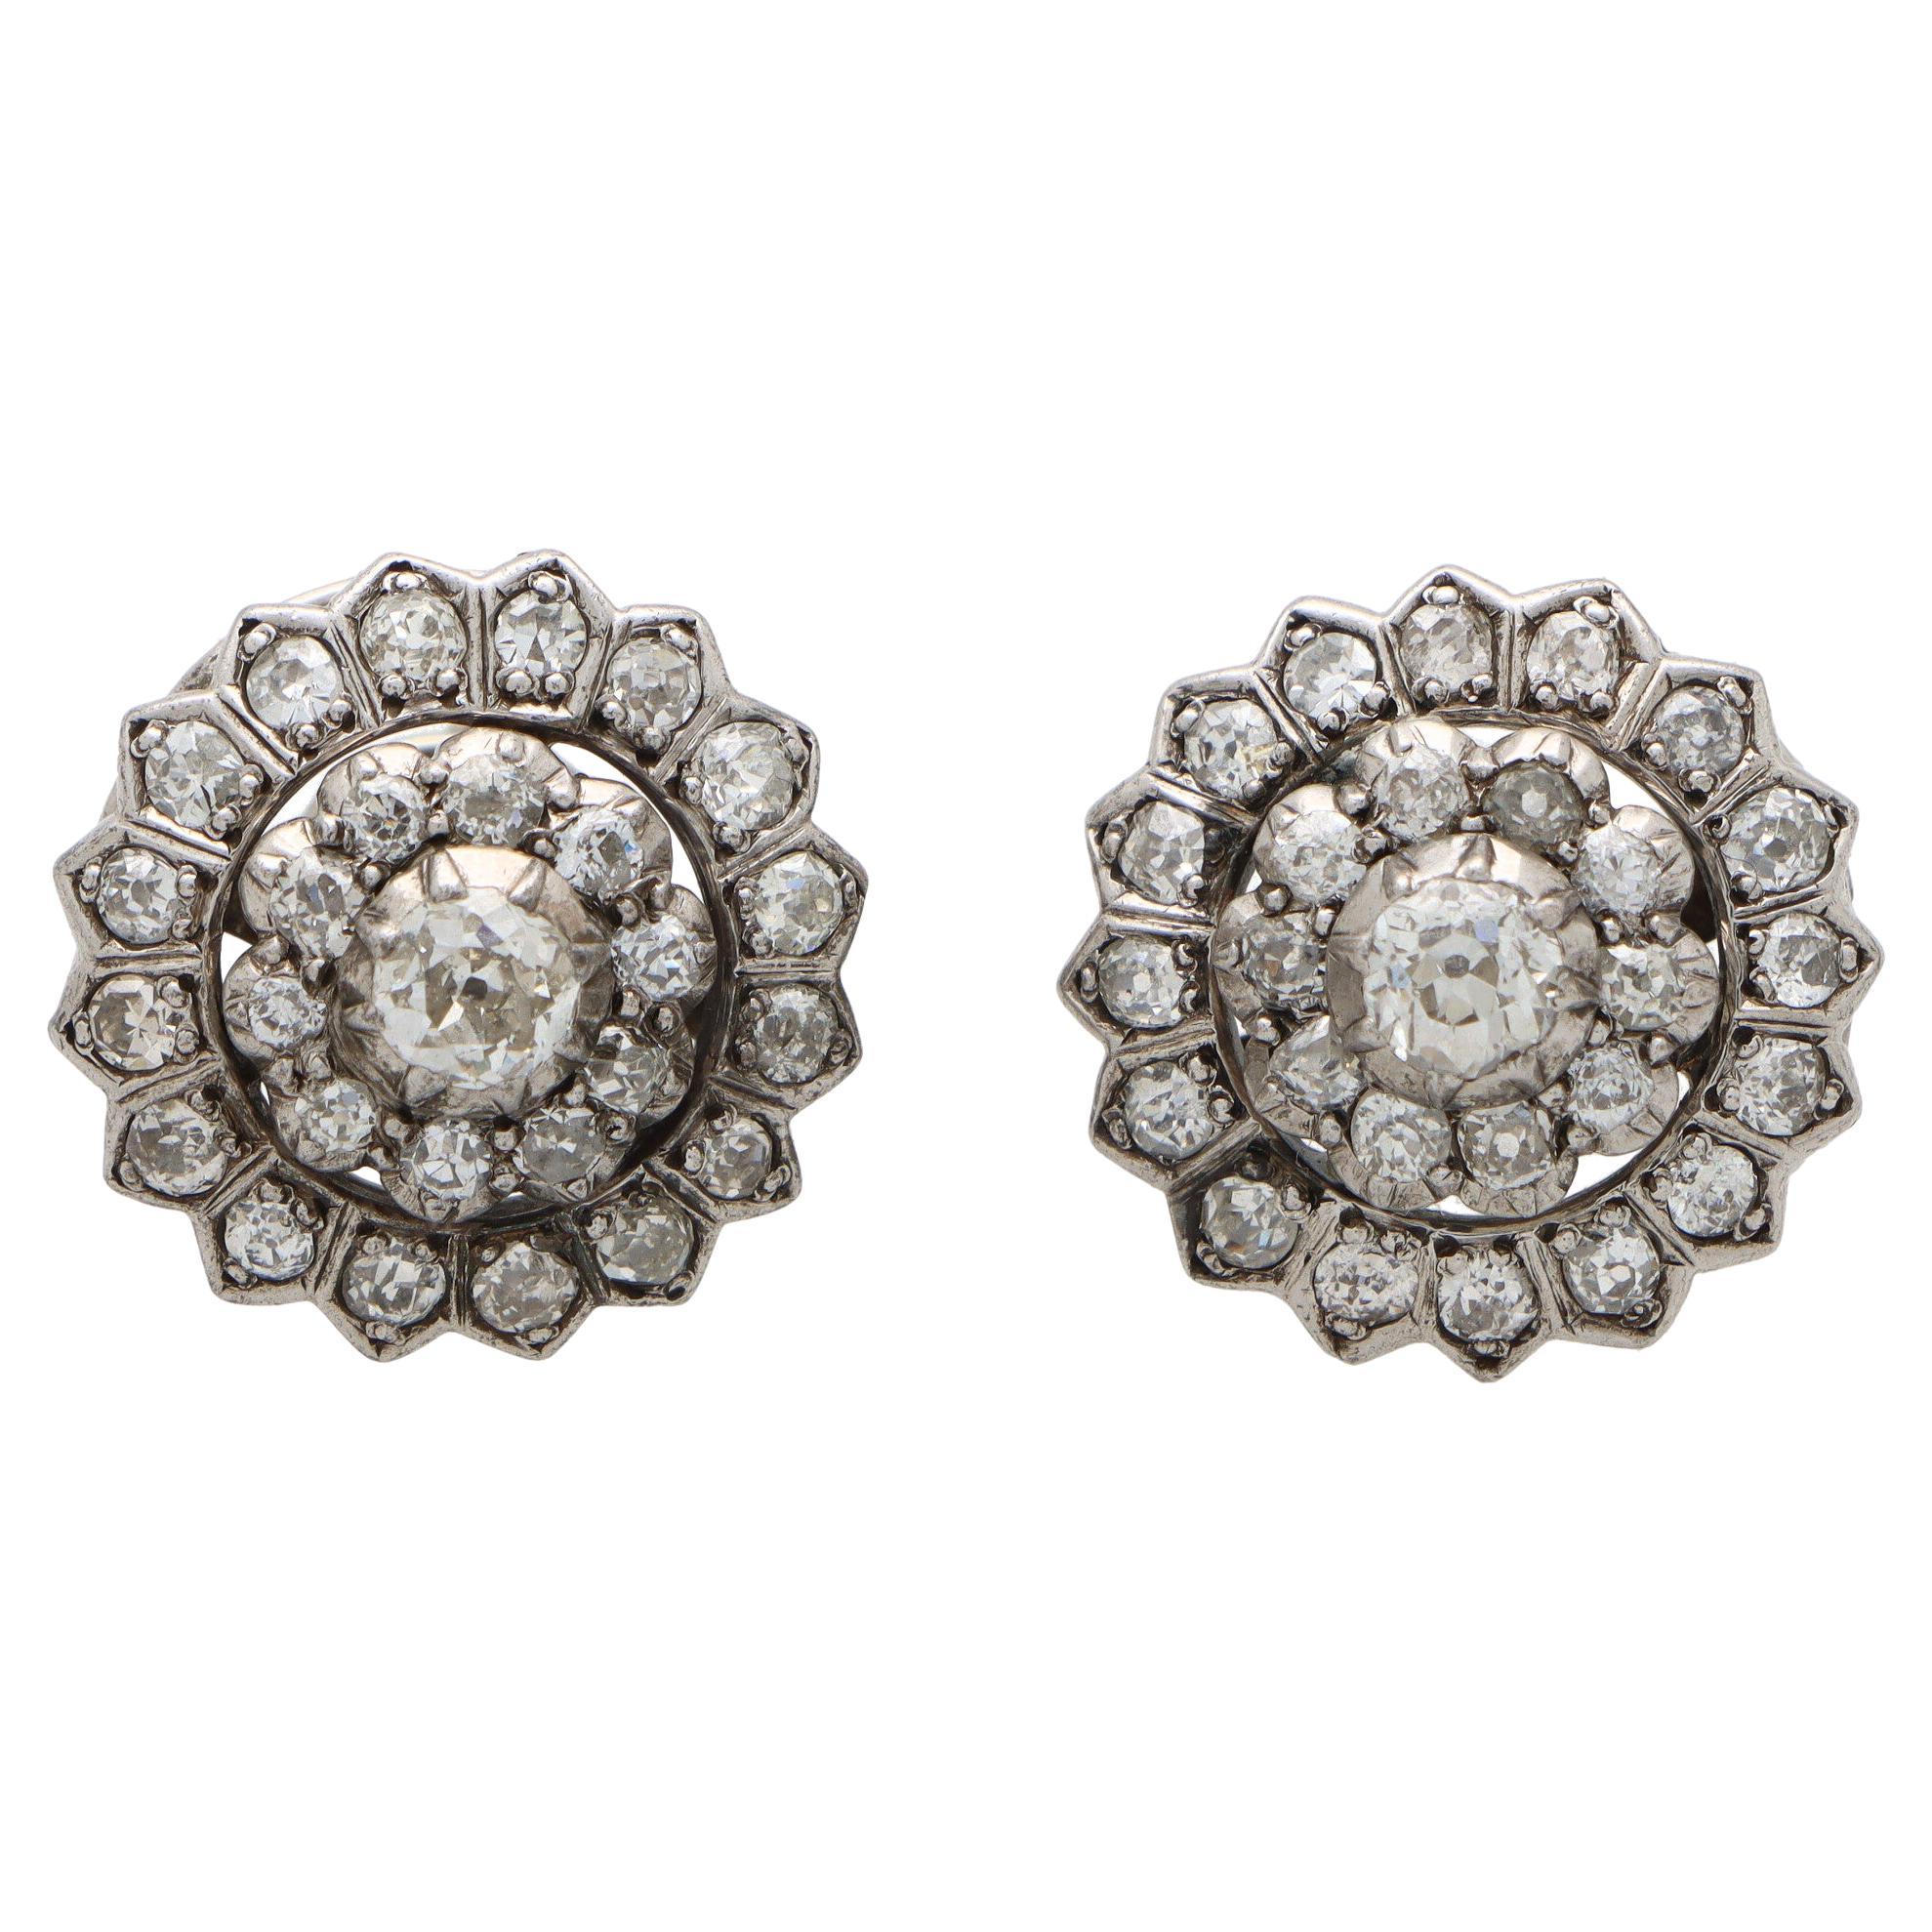 Early Victorian Diamond Coronet Cluster Earrings Set in Silver